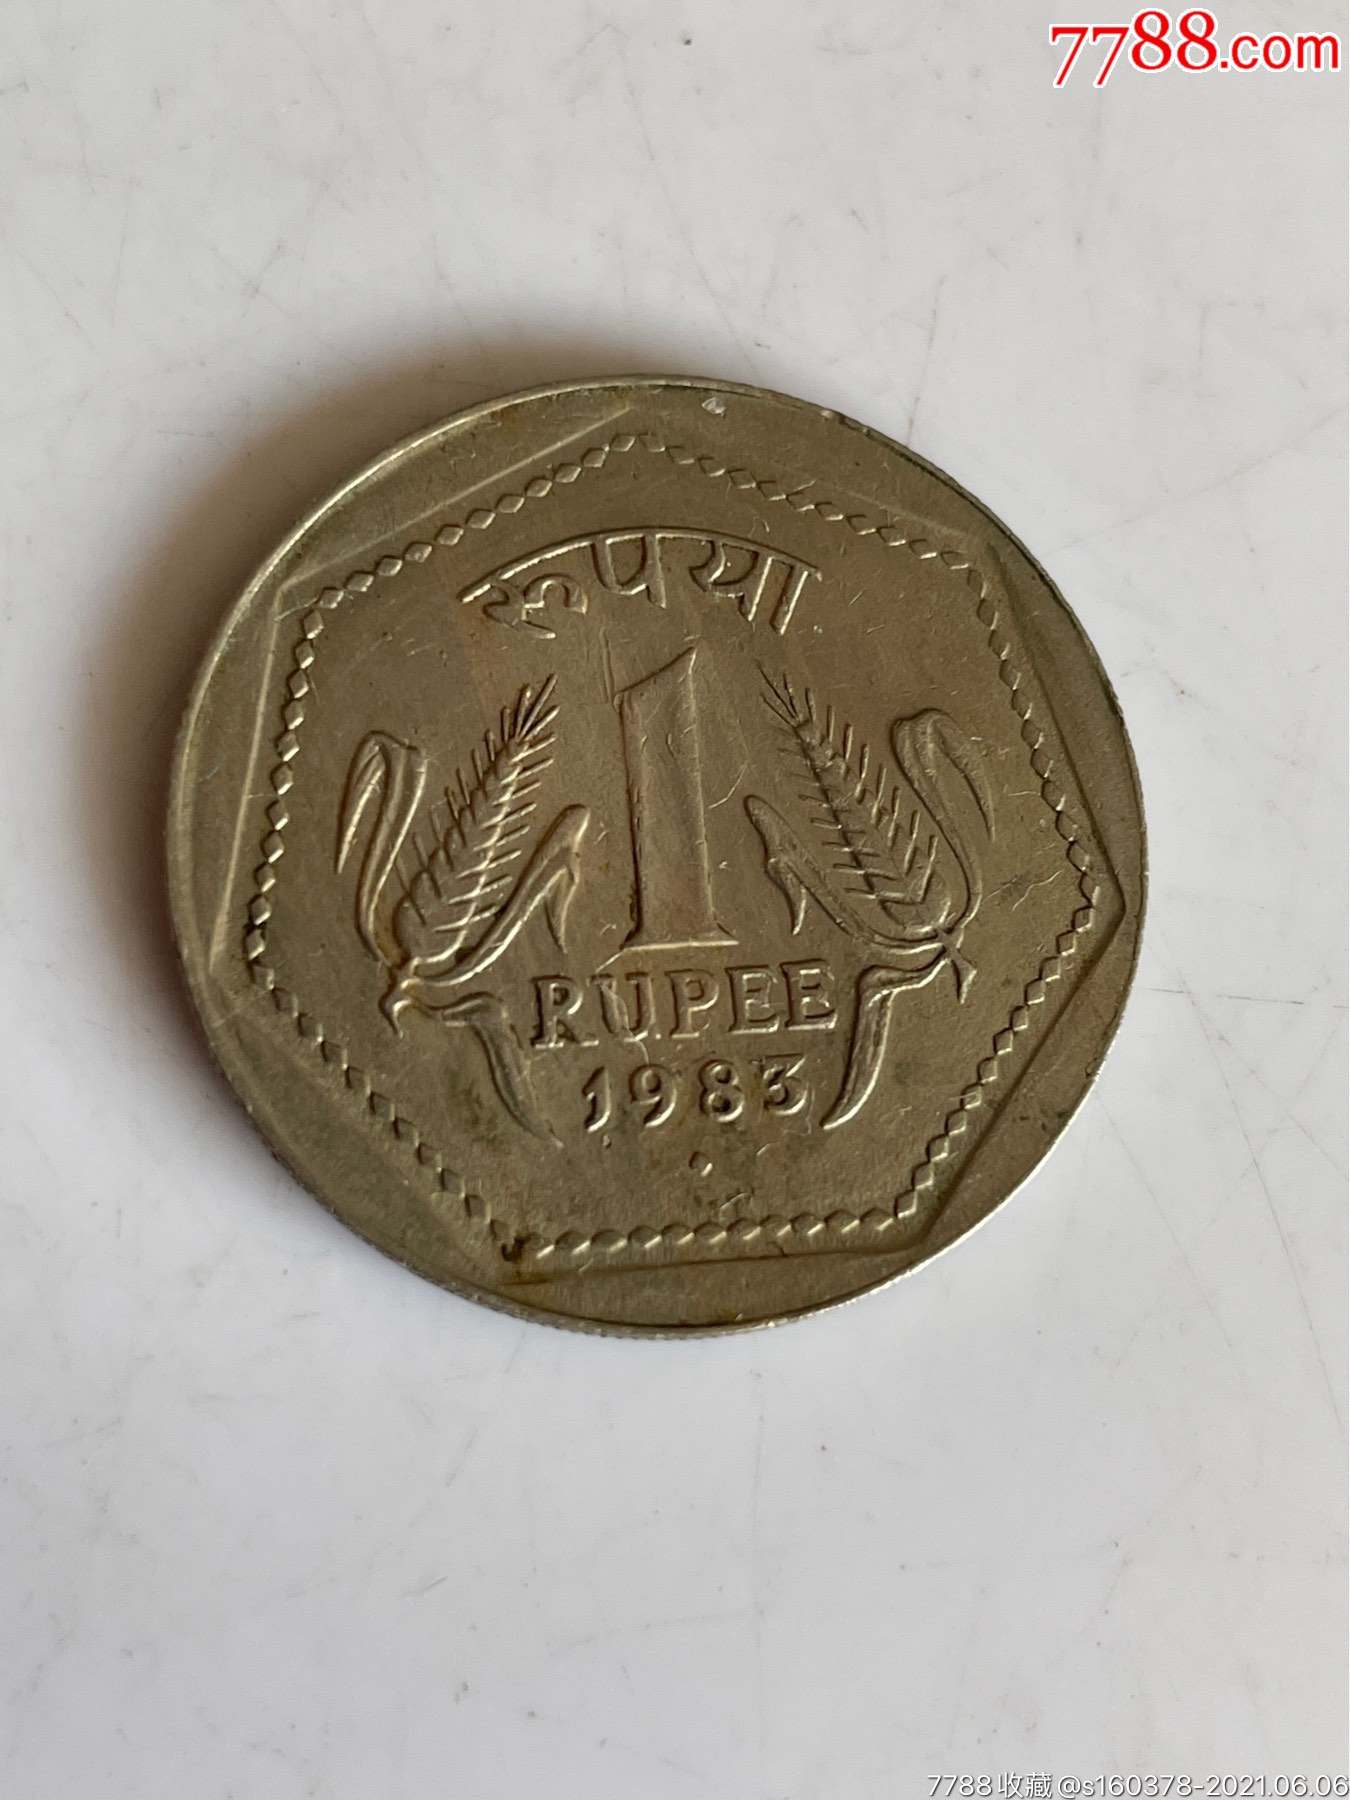 1983年印度硬币1卢比外国硬币